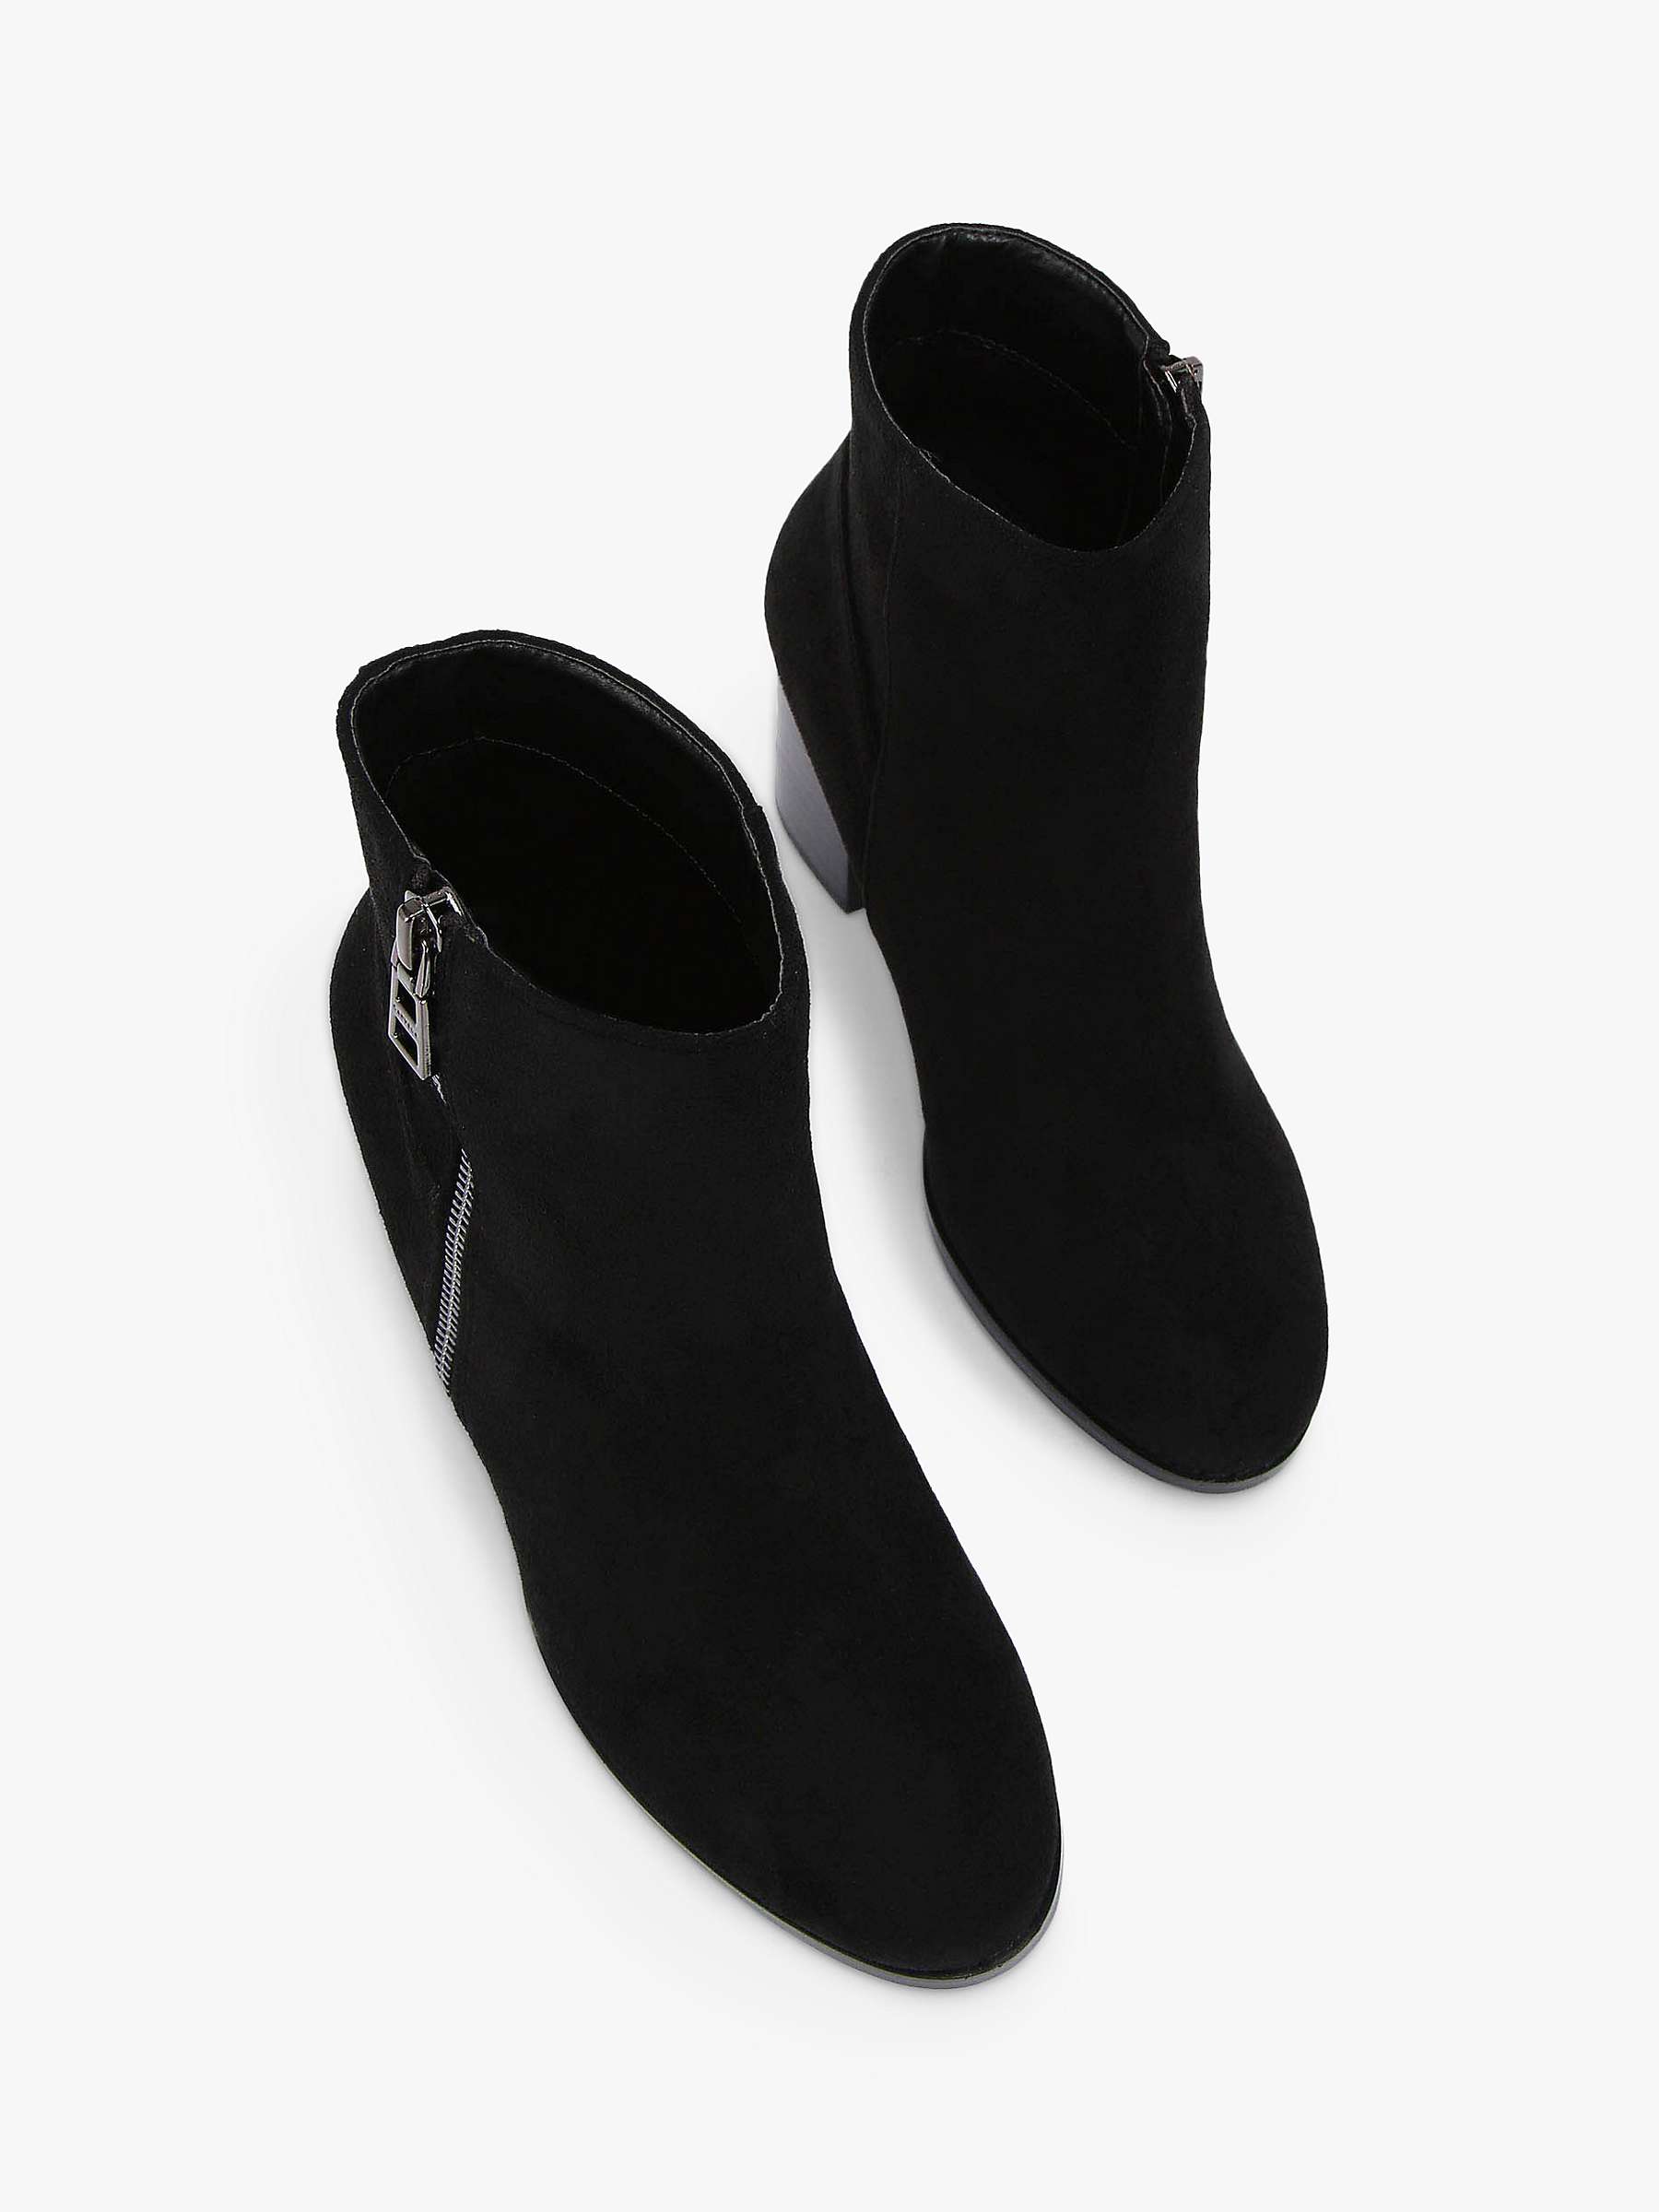 Buy Carvela Toodle Heeled Ankle Boots Online at johnlewis.com